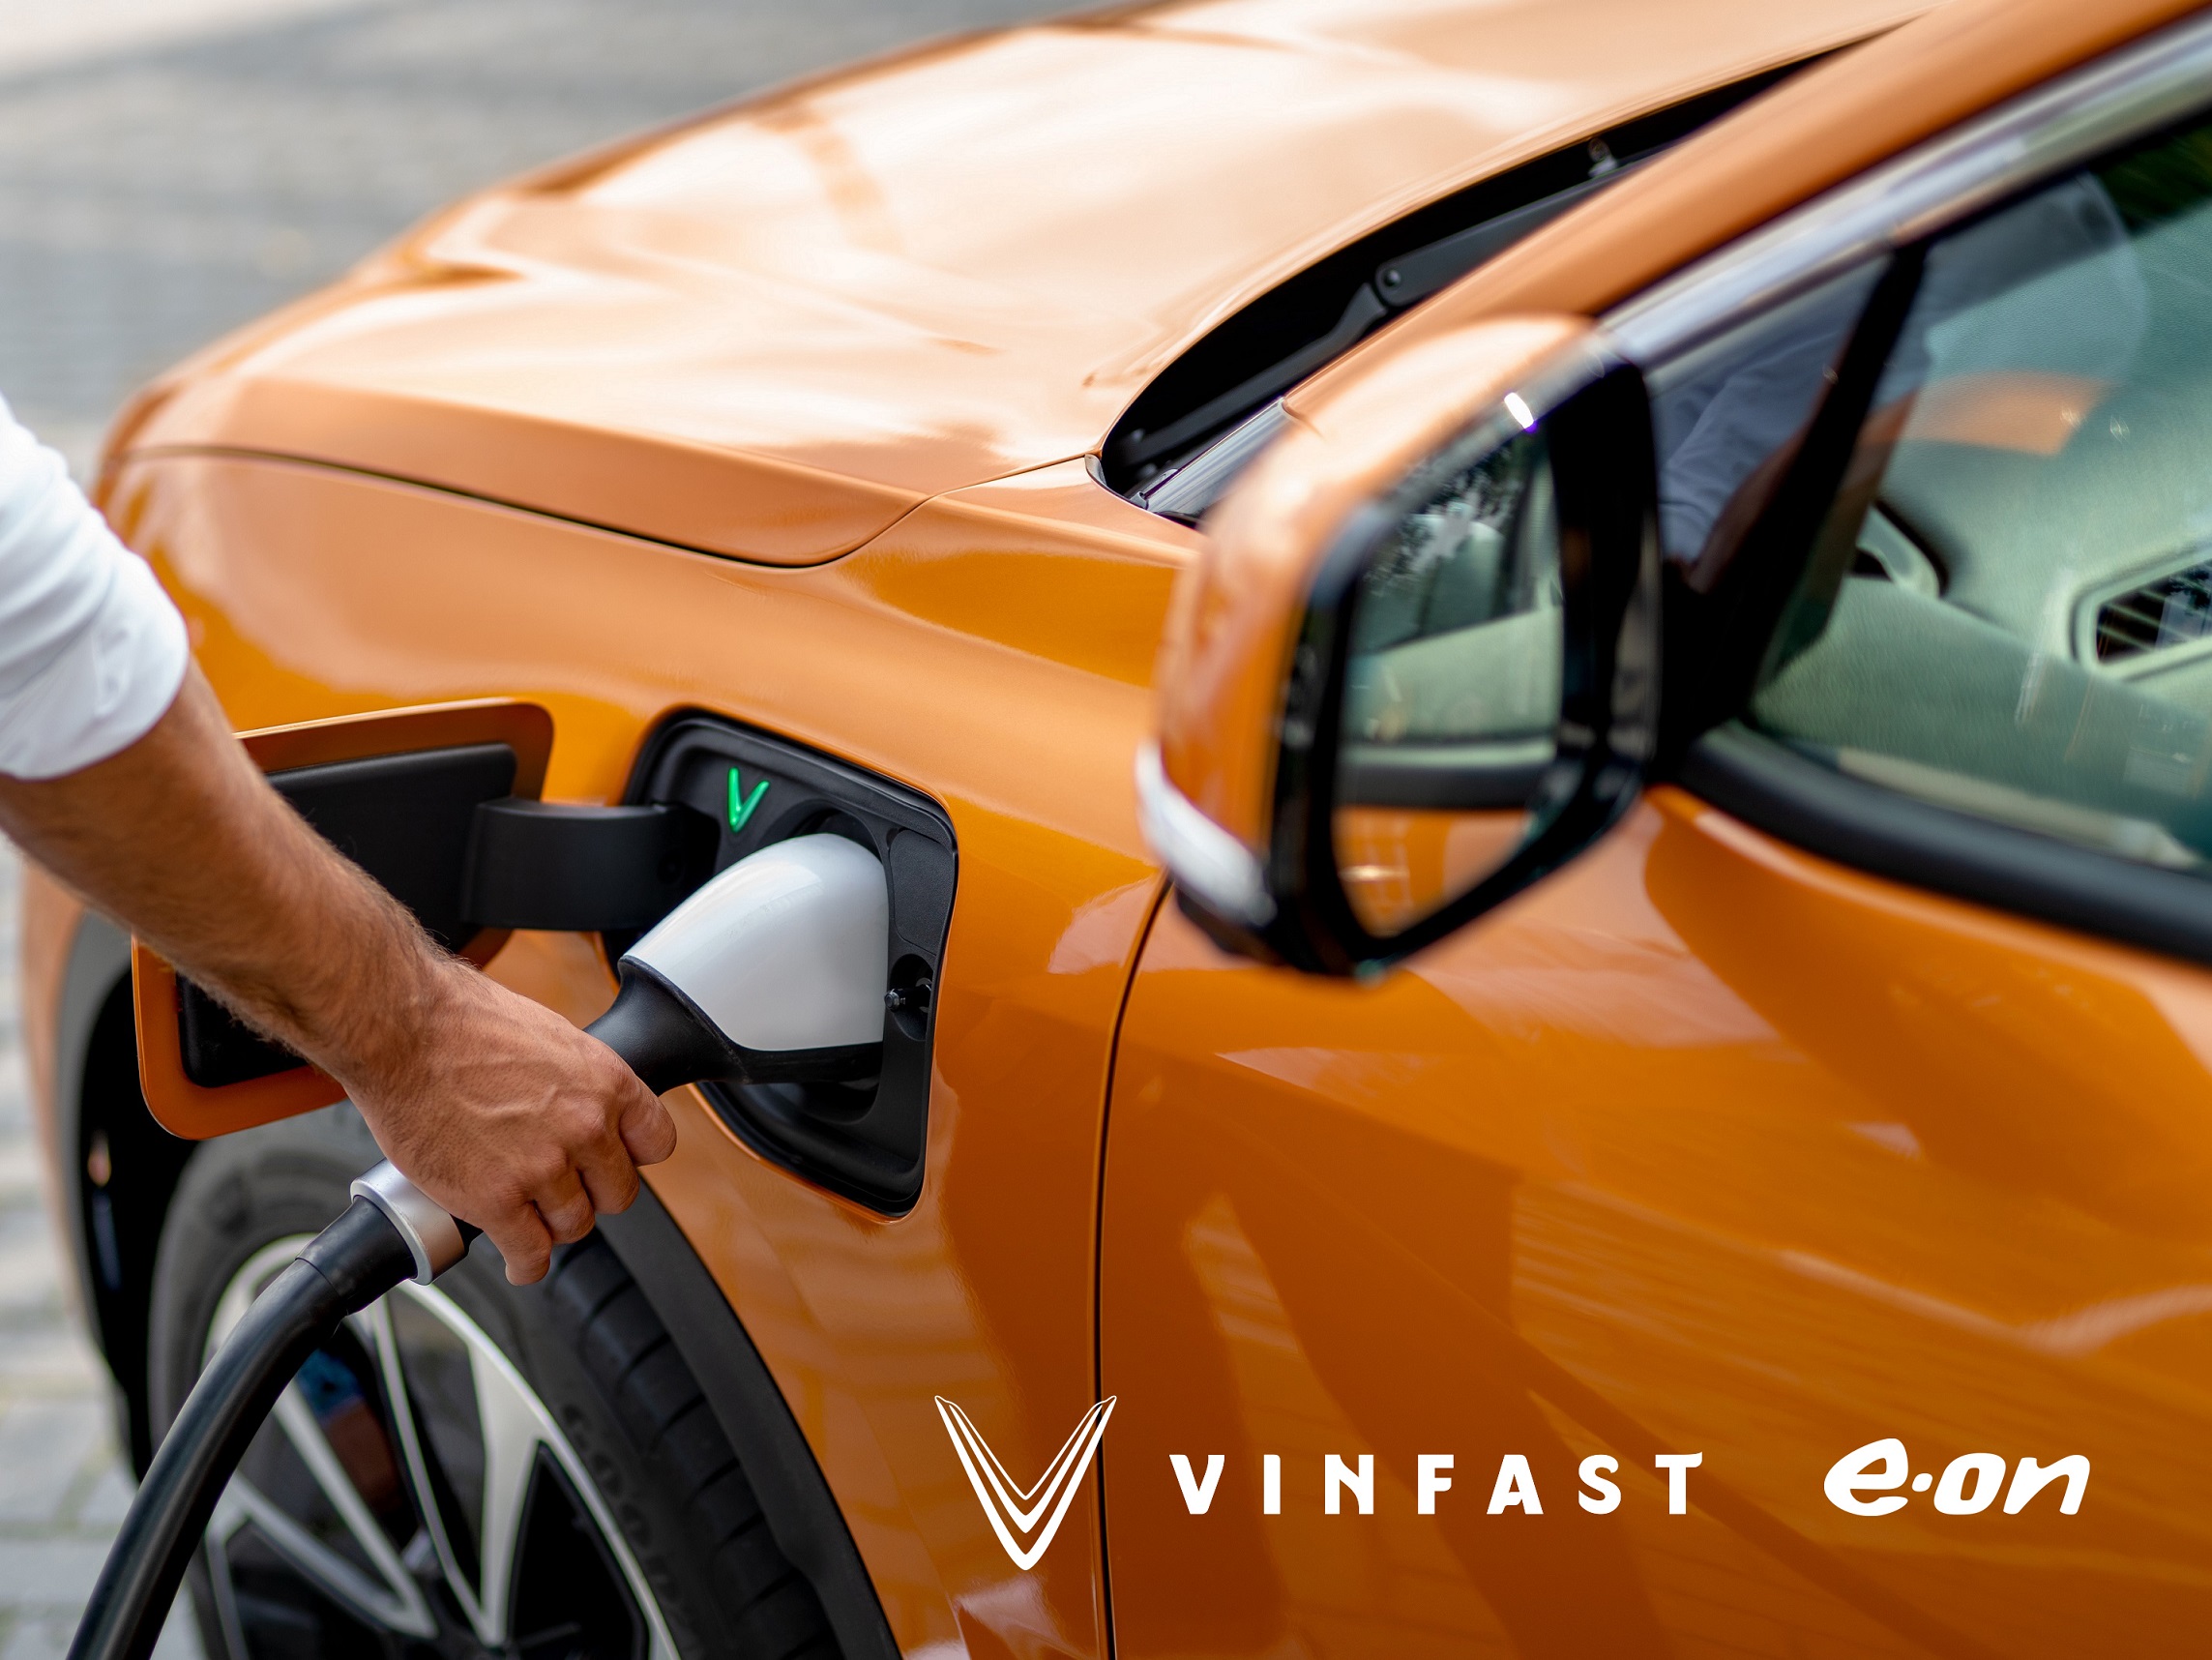 Kinh tế - VinFast hợp tác với E.ON Drive phát triển hạ tầng sạc tại các cửa hàng Vinfast ở Châu Âu (Hình 2).